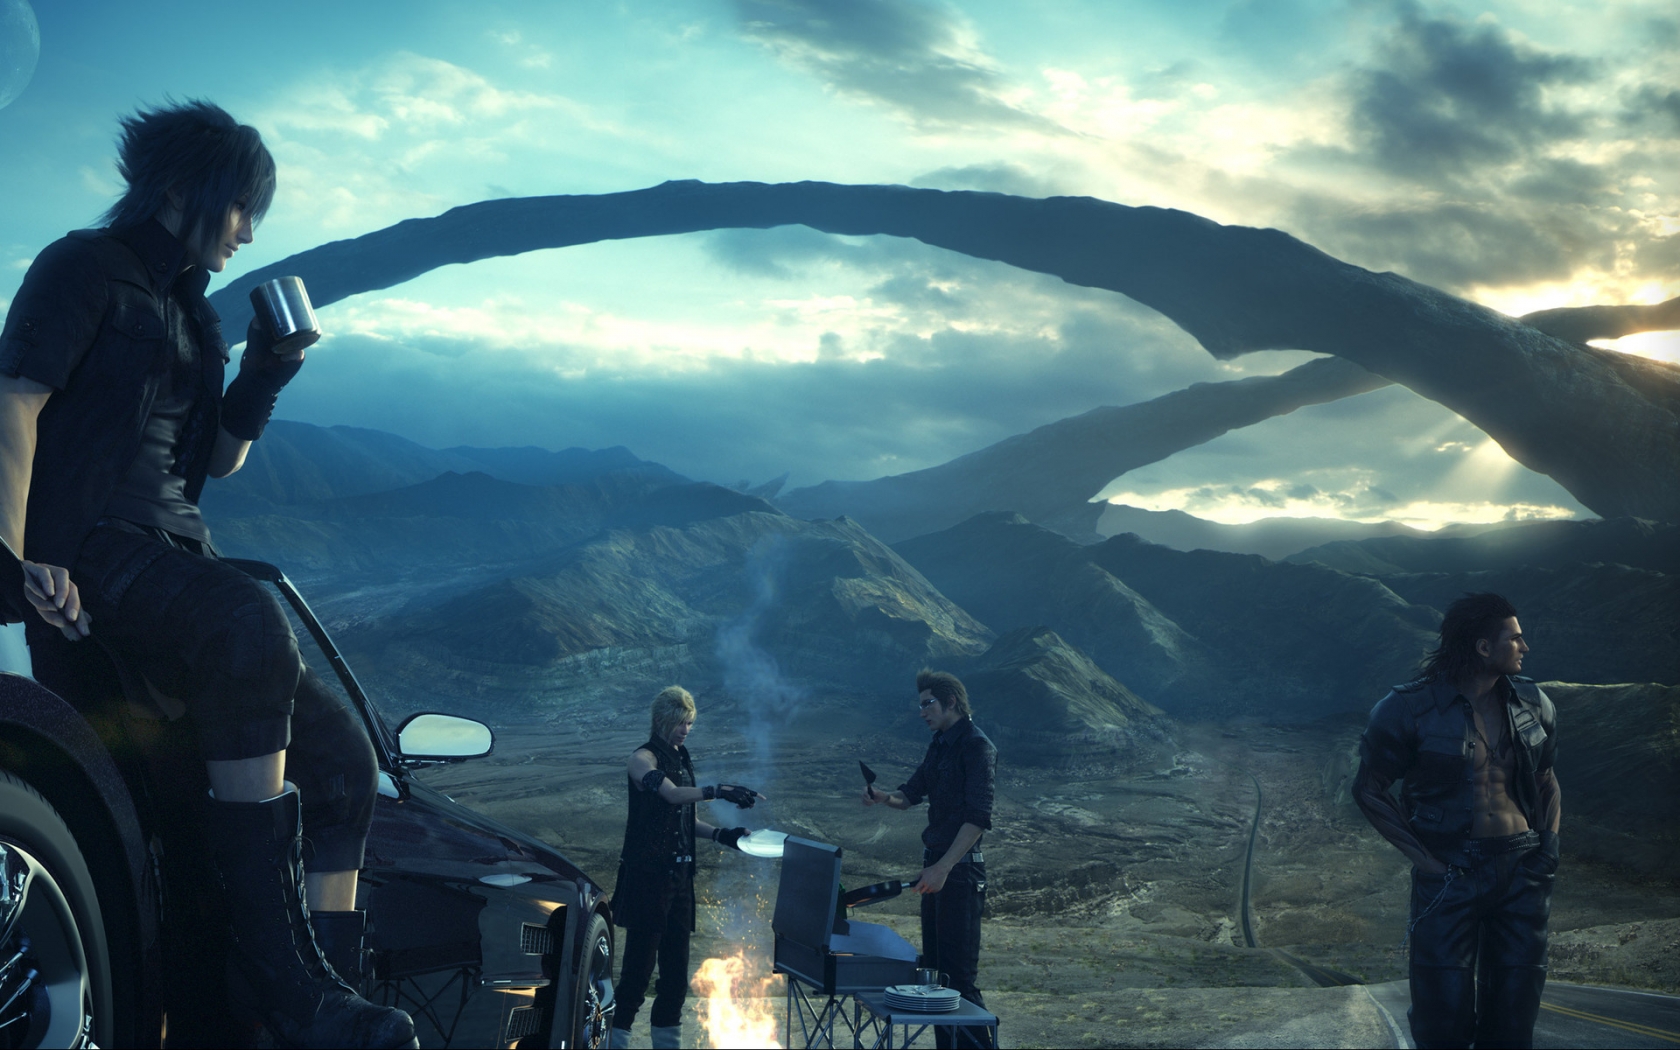 Final Fantasy XV Scene for 1680 x 1050 widescreen resolution